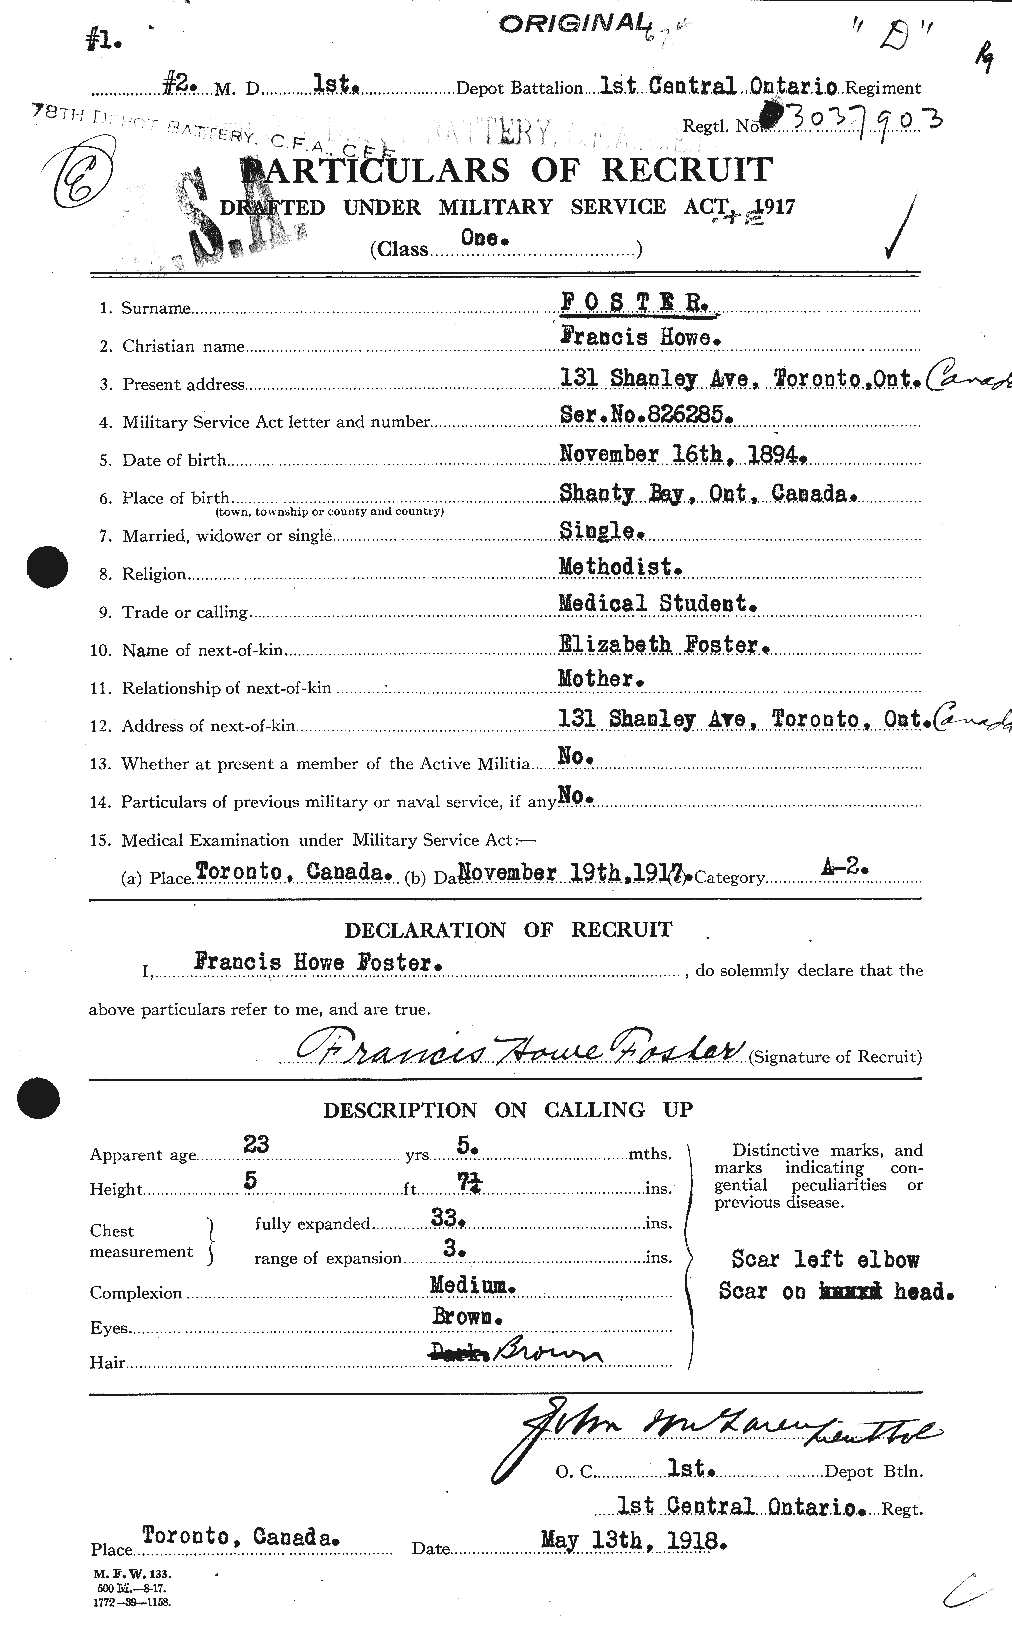 Dossiers du Personnel de la Première Guerre mondiale - CEC 330615a